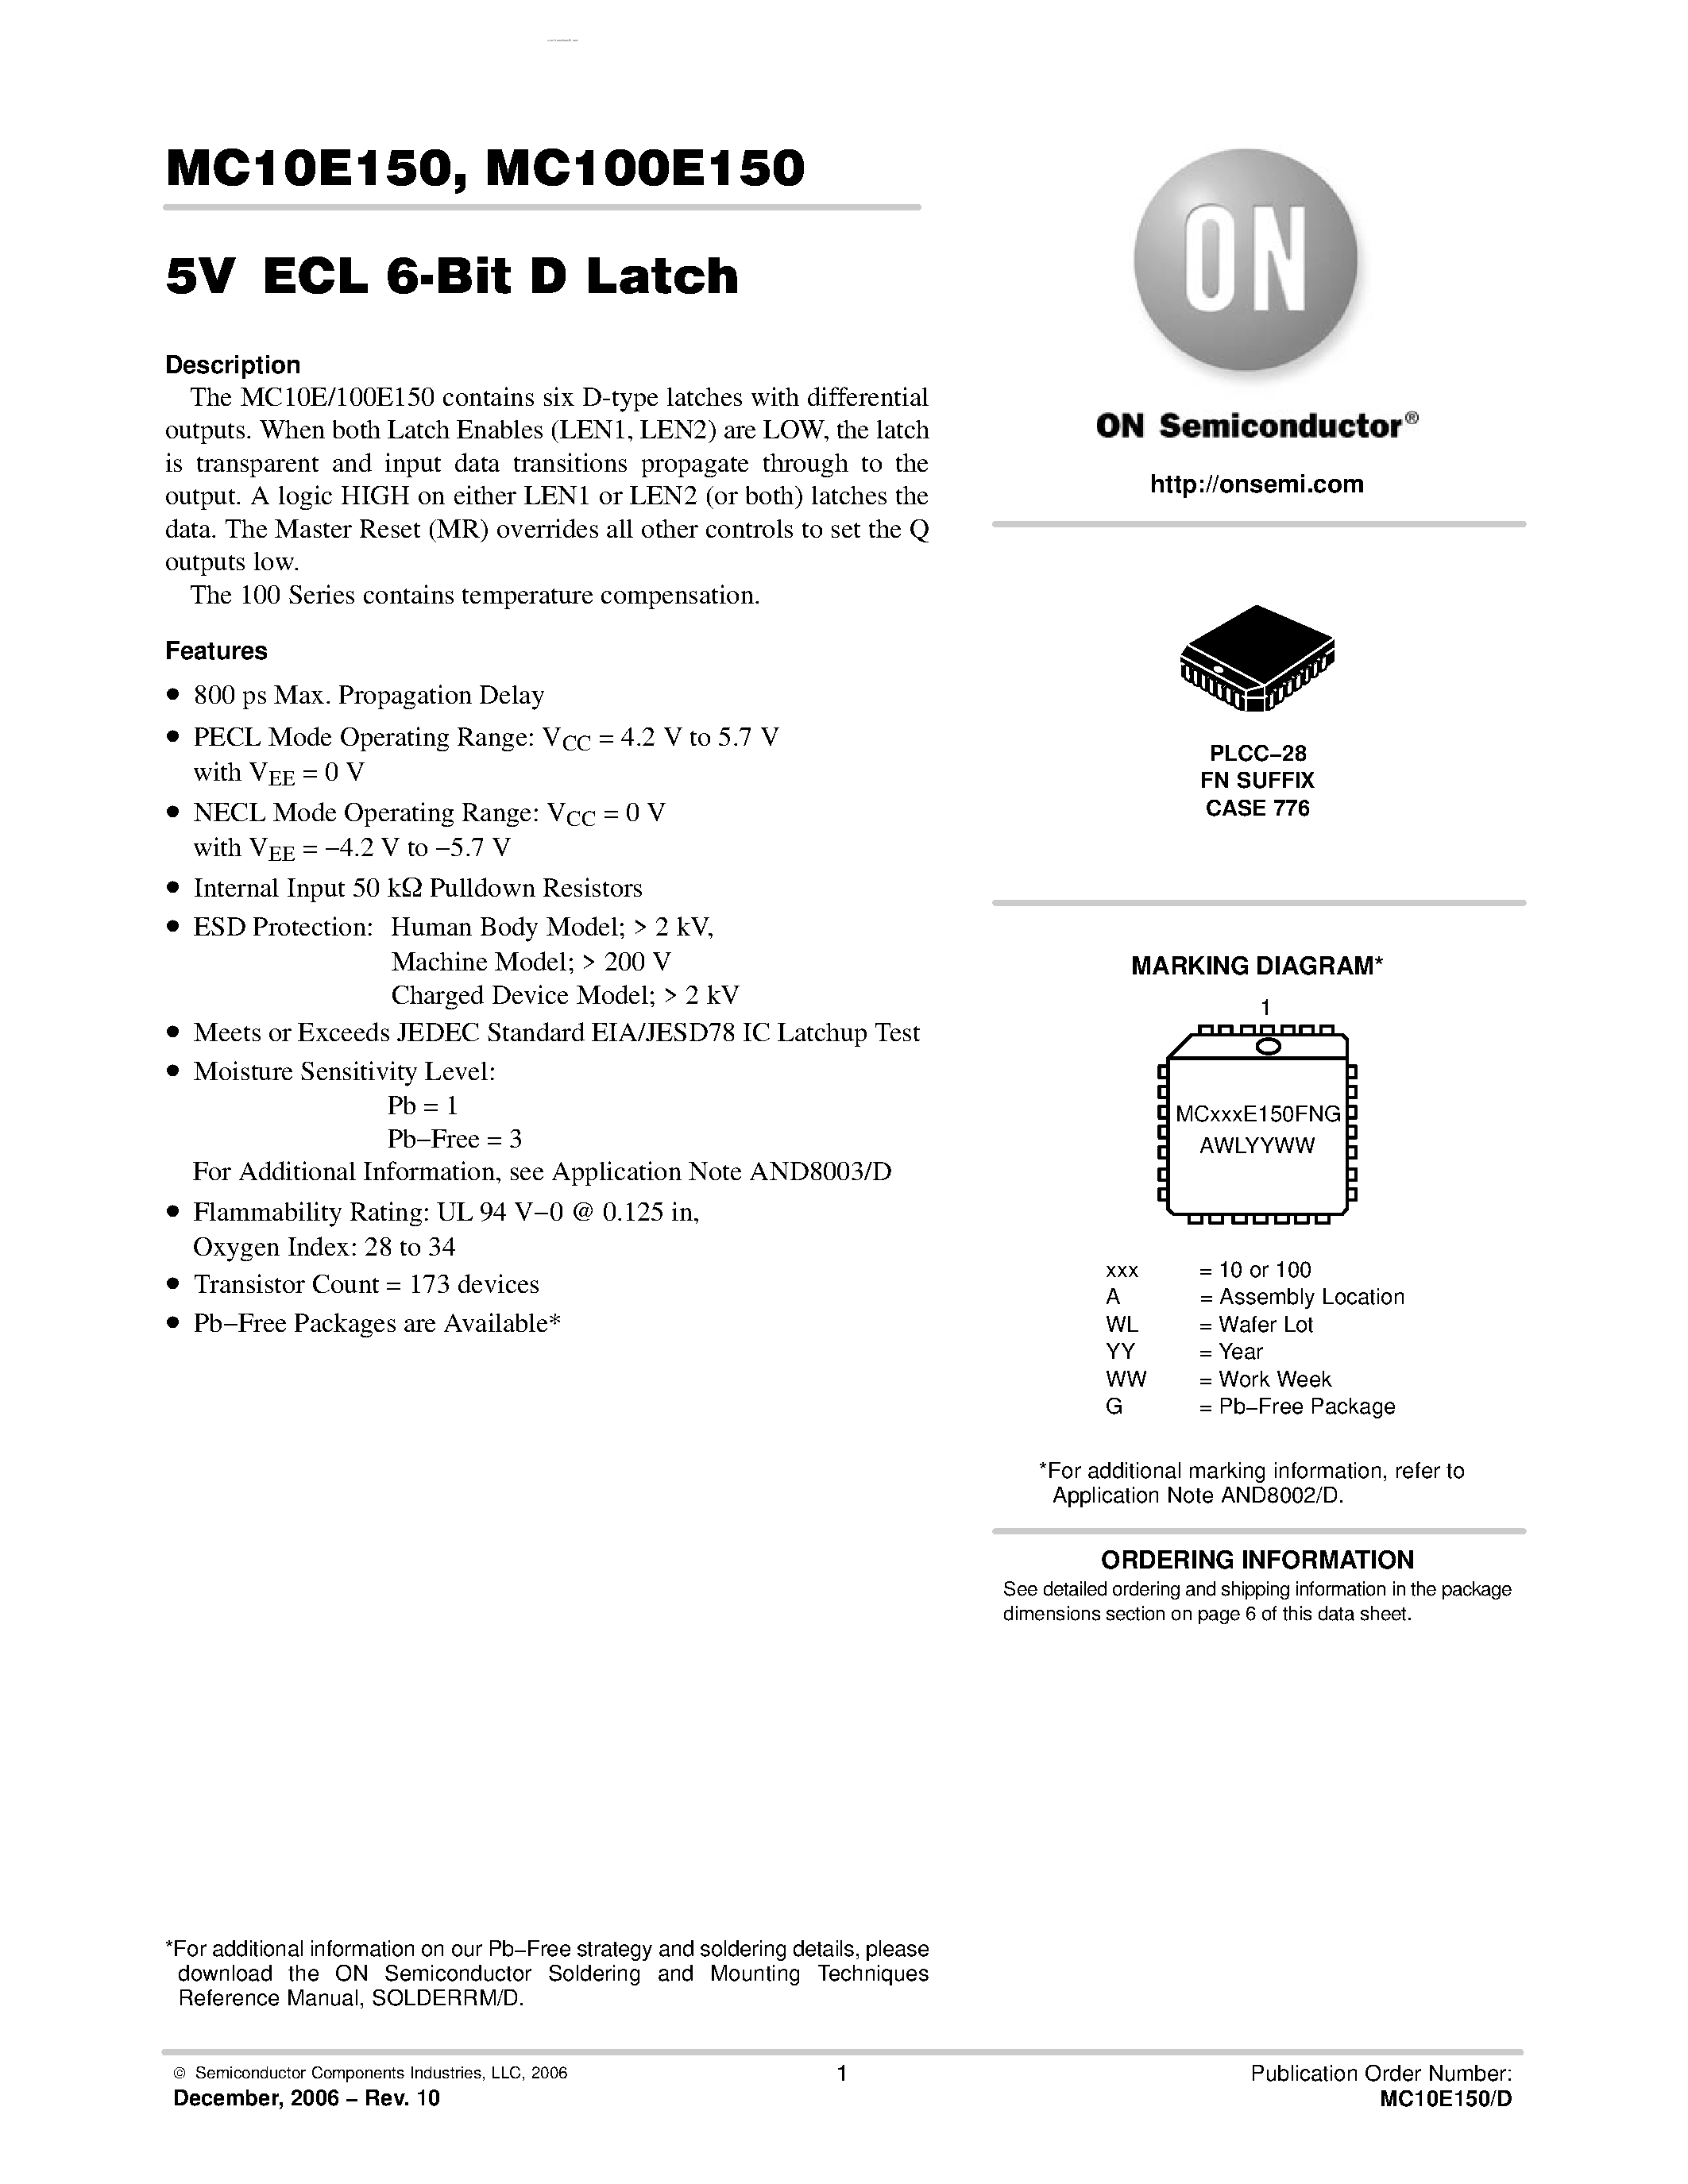 Datasheet MC100E150 - 6-BIT D LATCH page 1